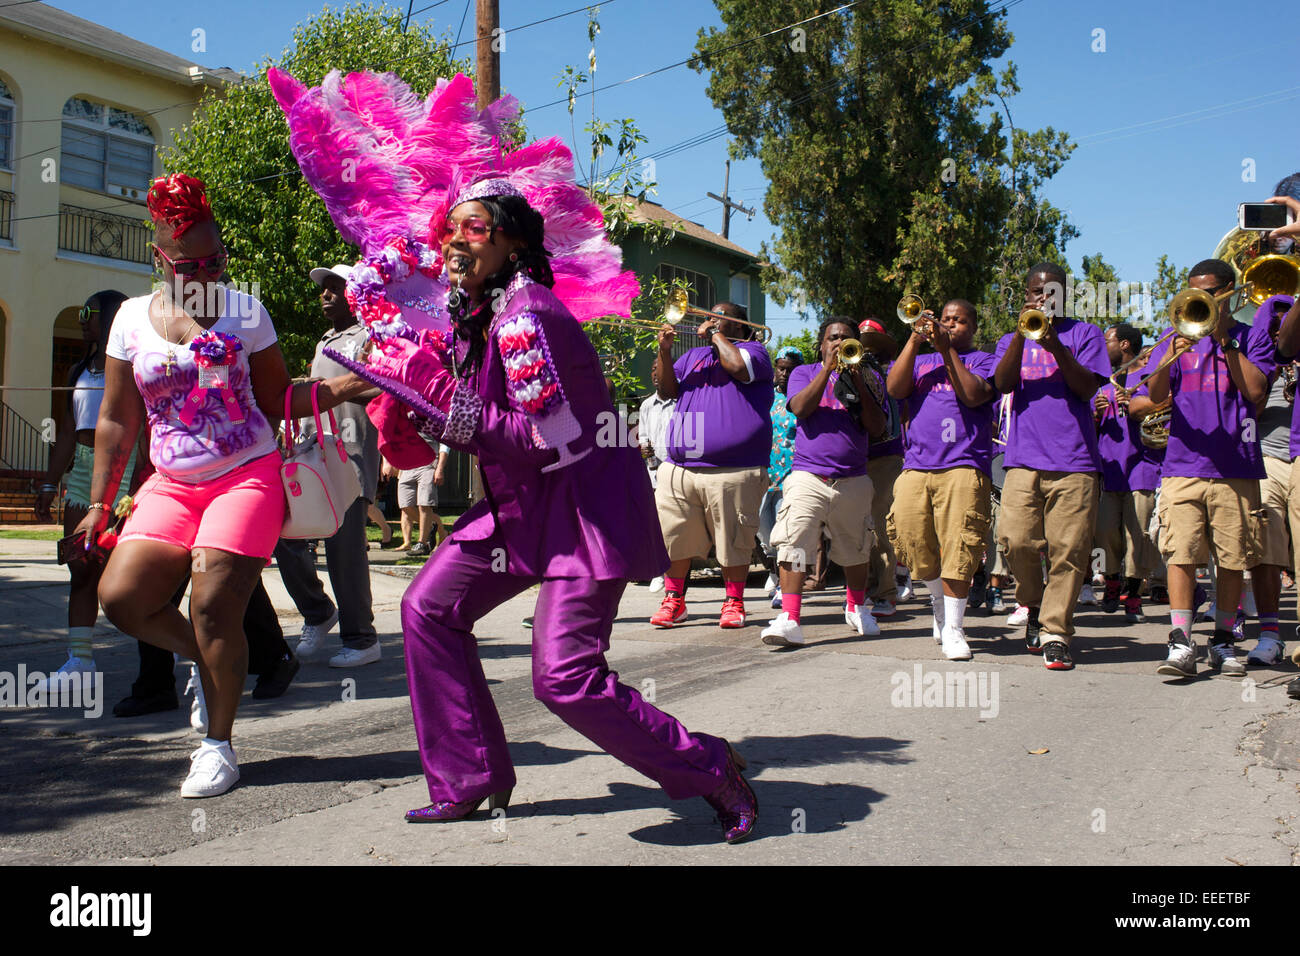 parade, New Orleans, Louisiana Stock Photo